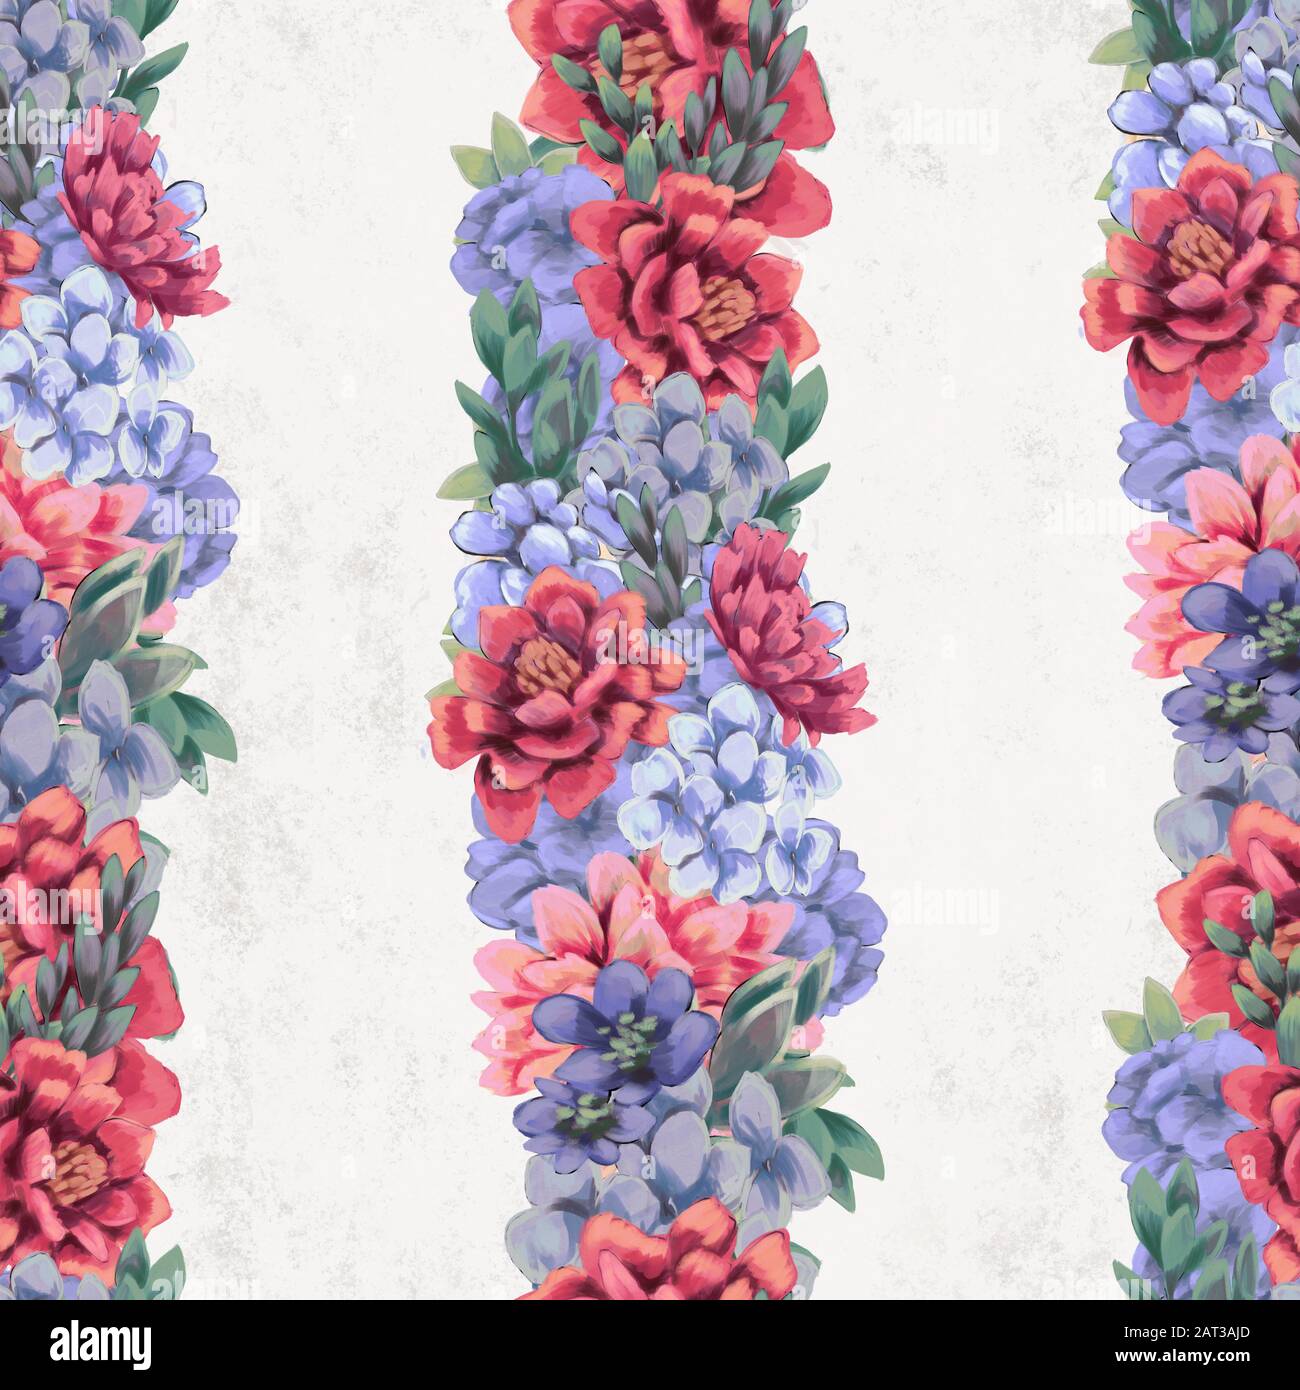 L'Aquarelle transparente floral pattern. Fleurs peintes à la main, modèle de carte de vœux ou du papier d'emballage Banque D'Images